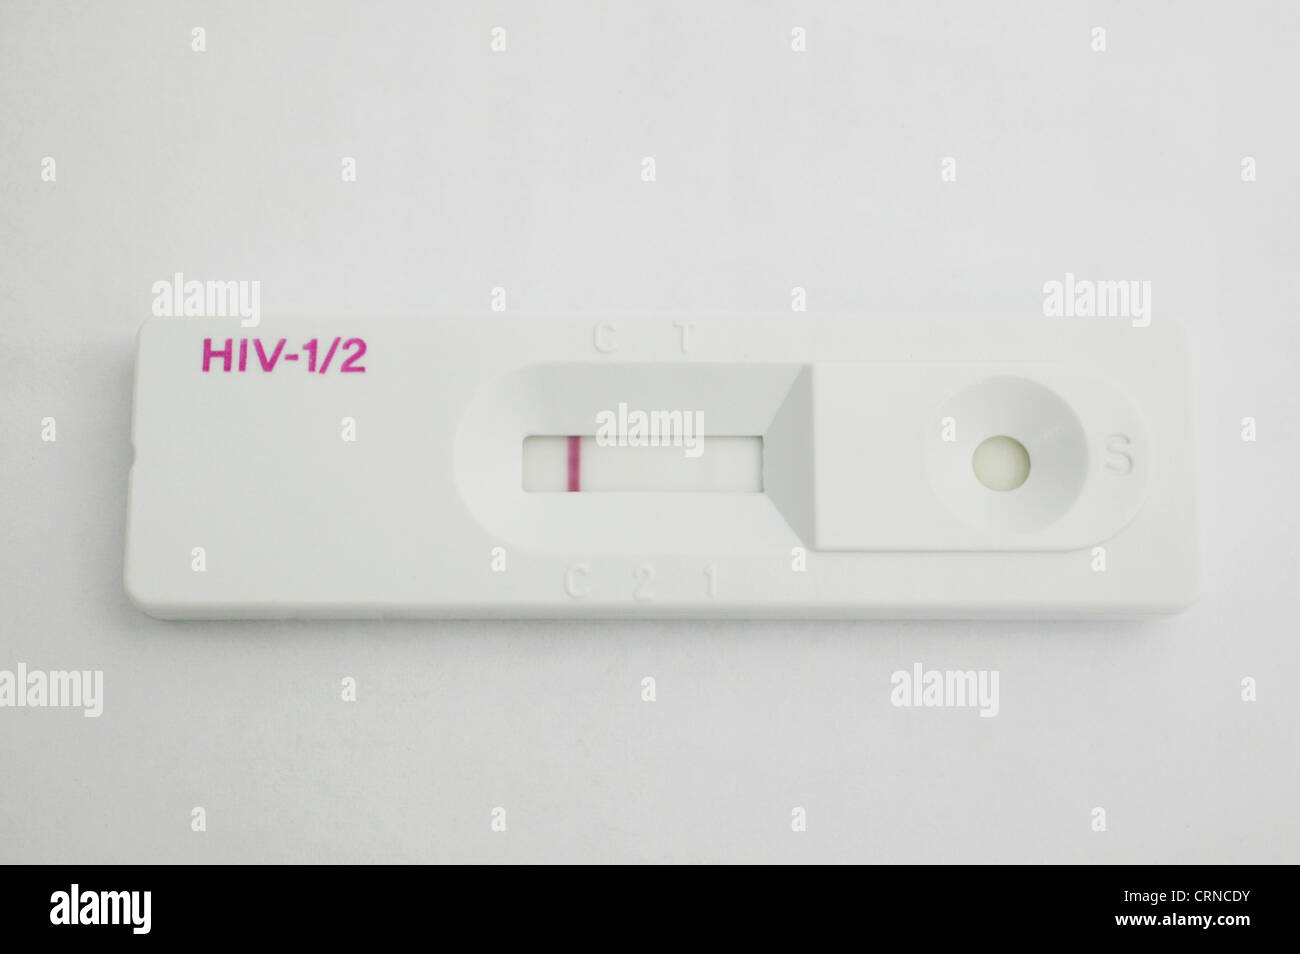 Autotest VIH® - HIV/AIDS Self-test- HIV/AIDS home test - Autotest VIH